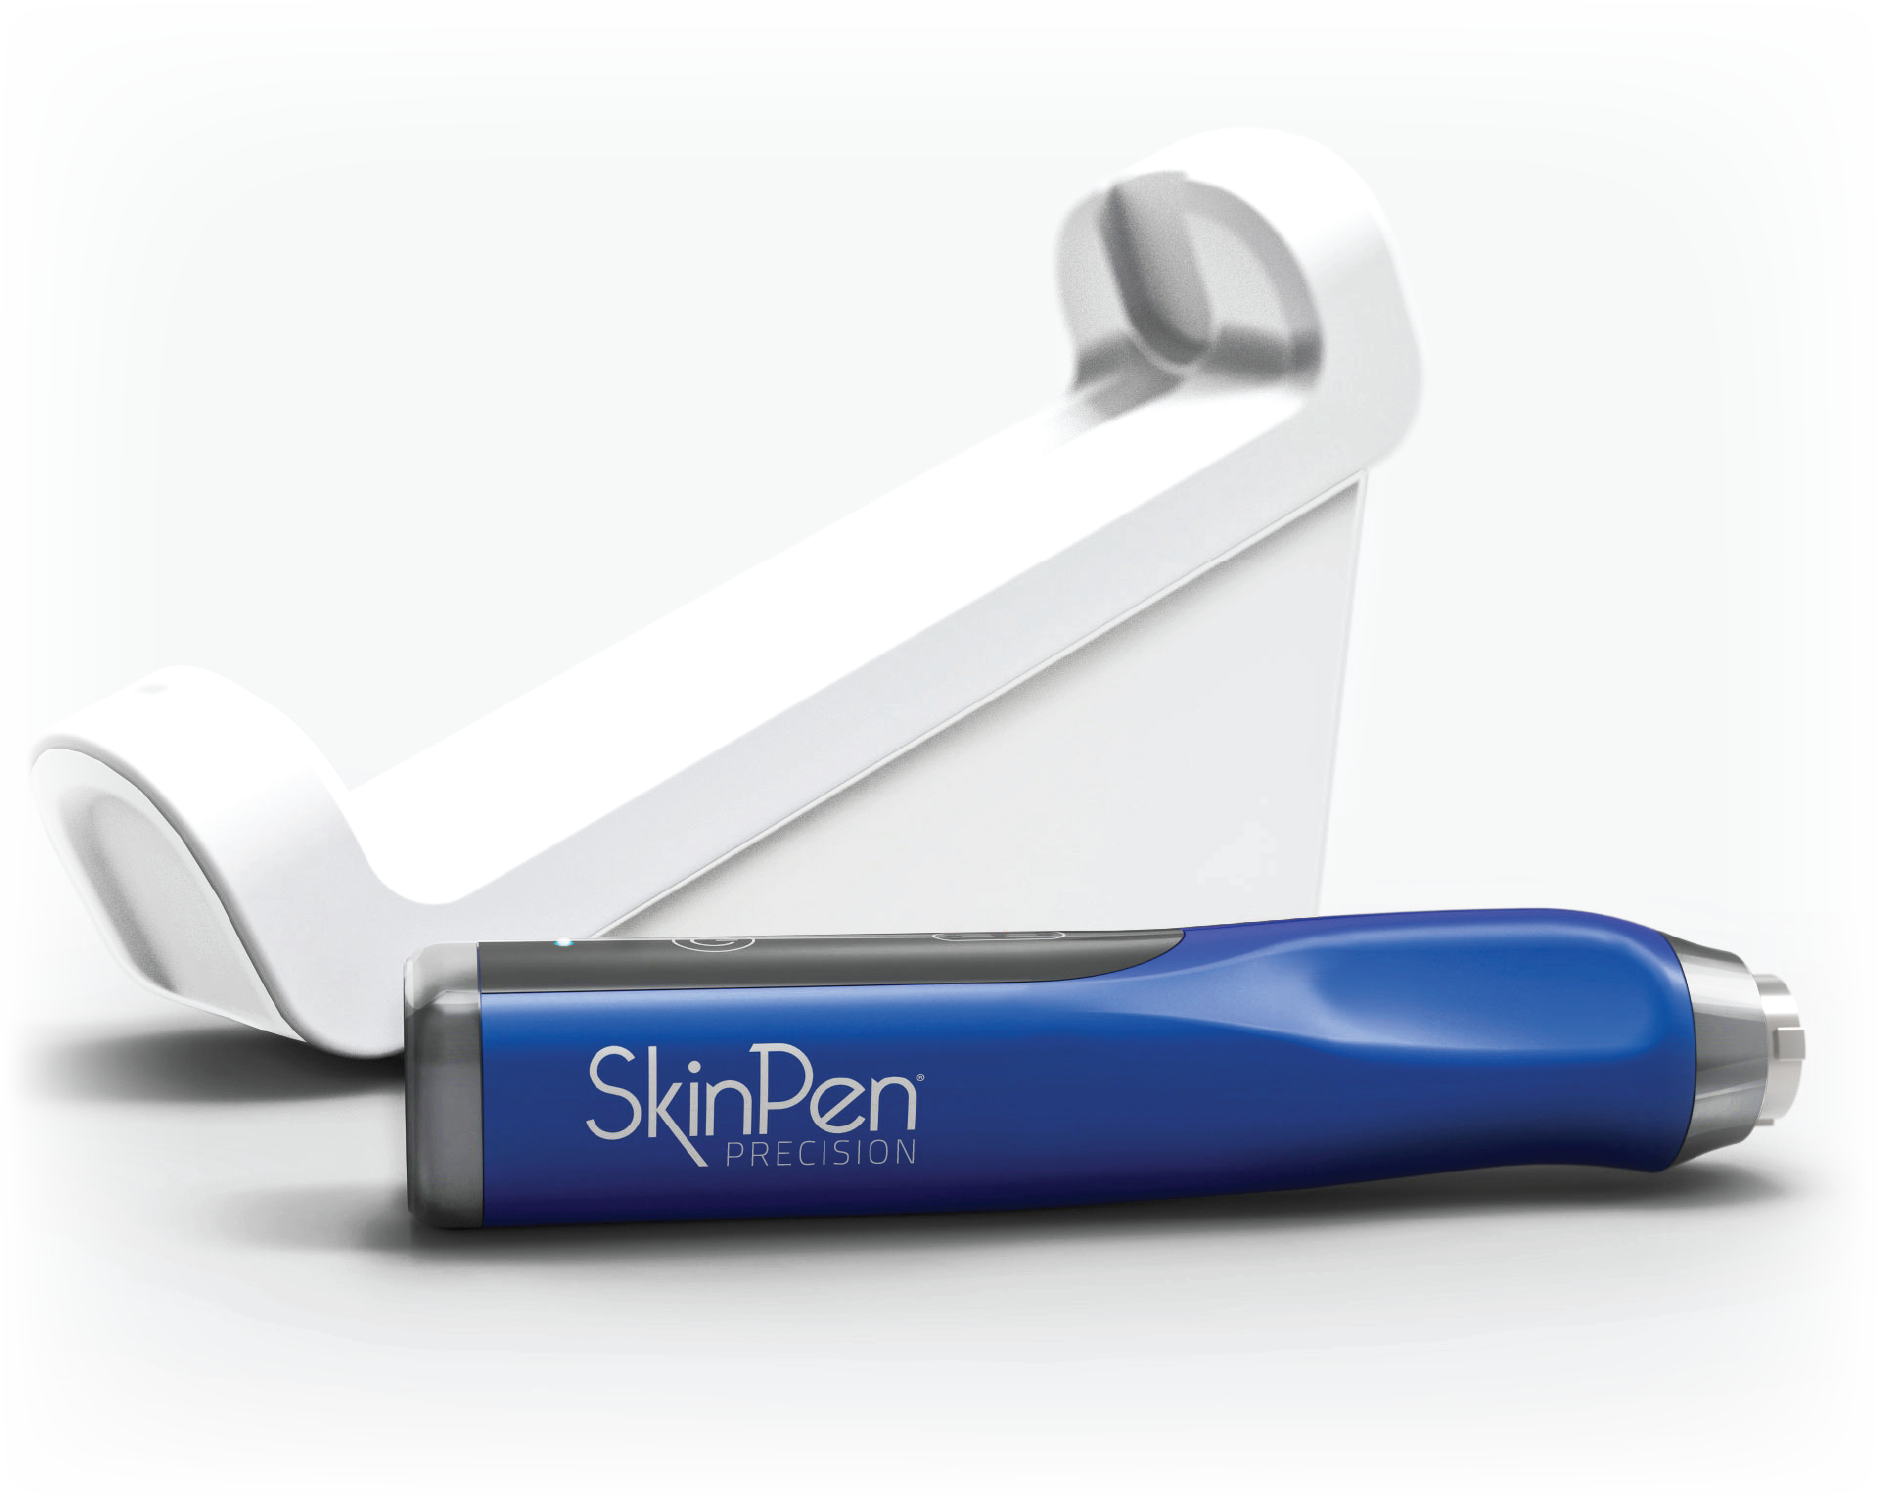 SkinPen device